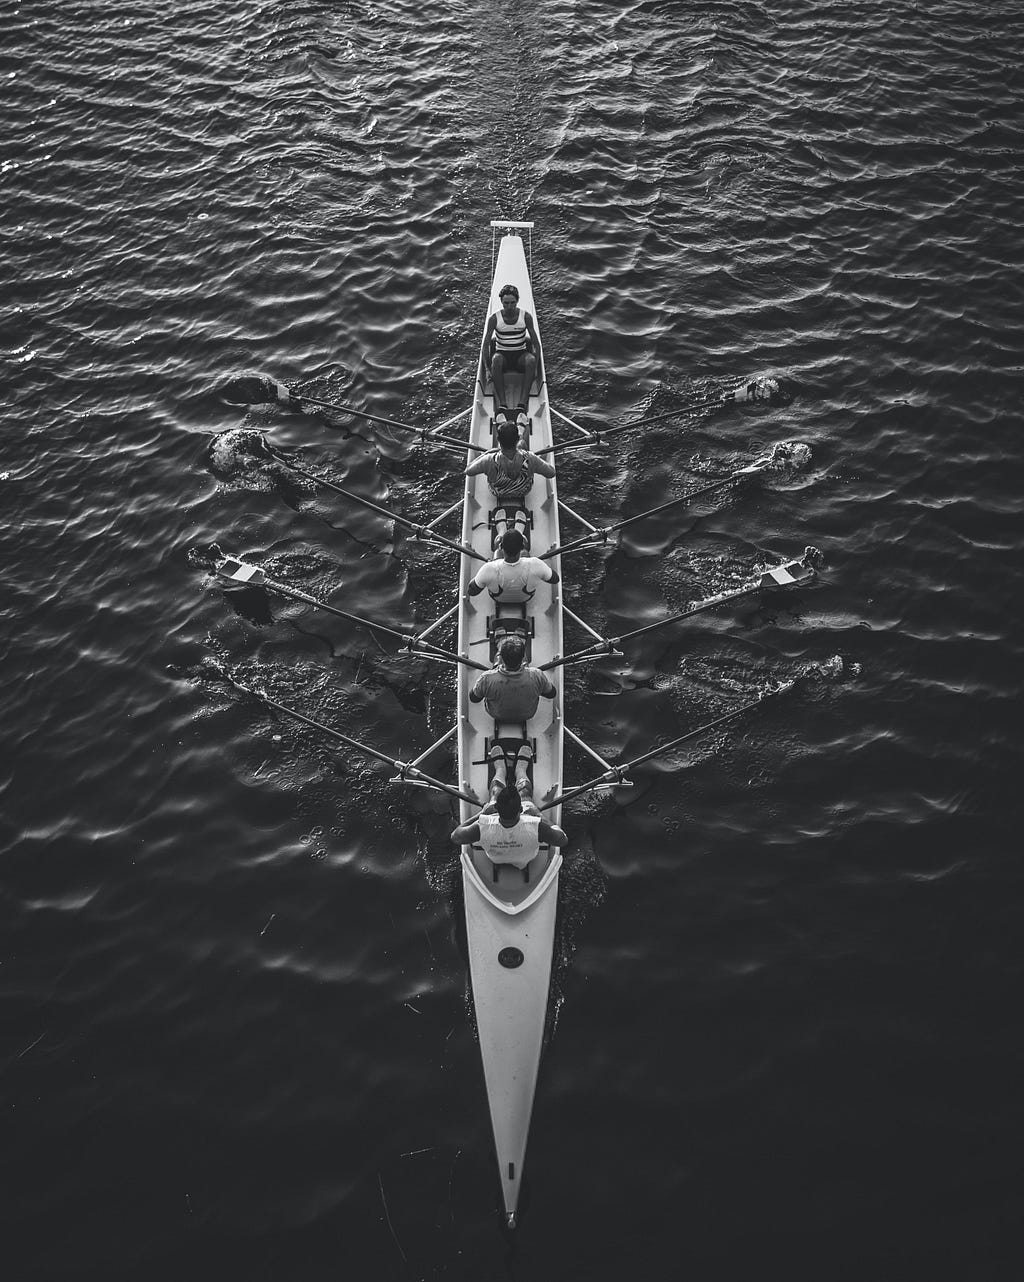 Foto vista de cima com pessoas remando uma canoa de competição.